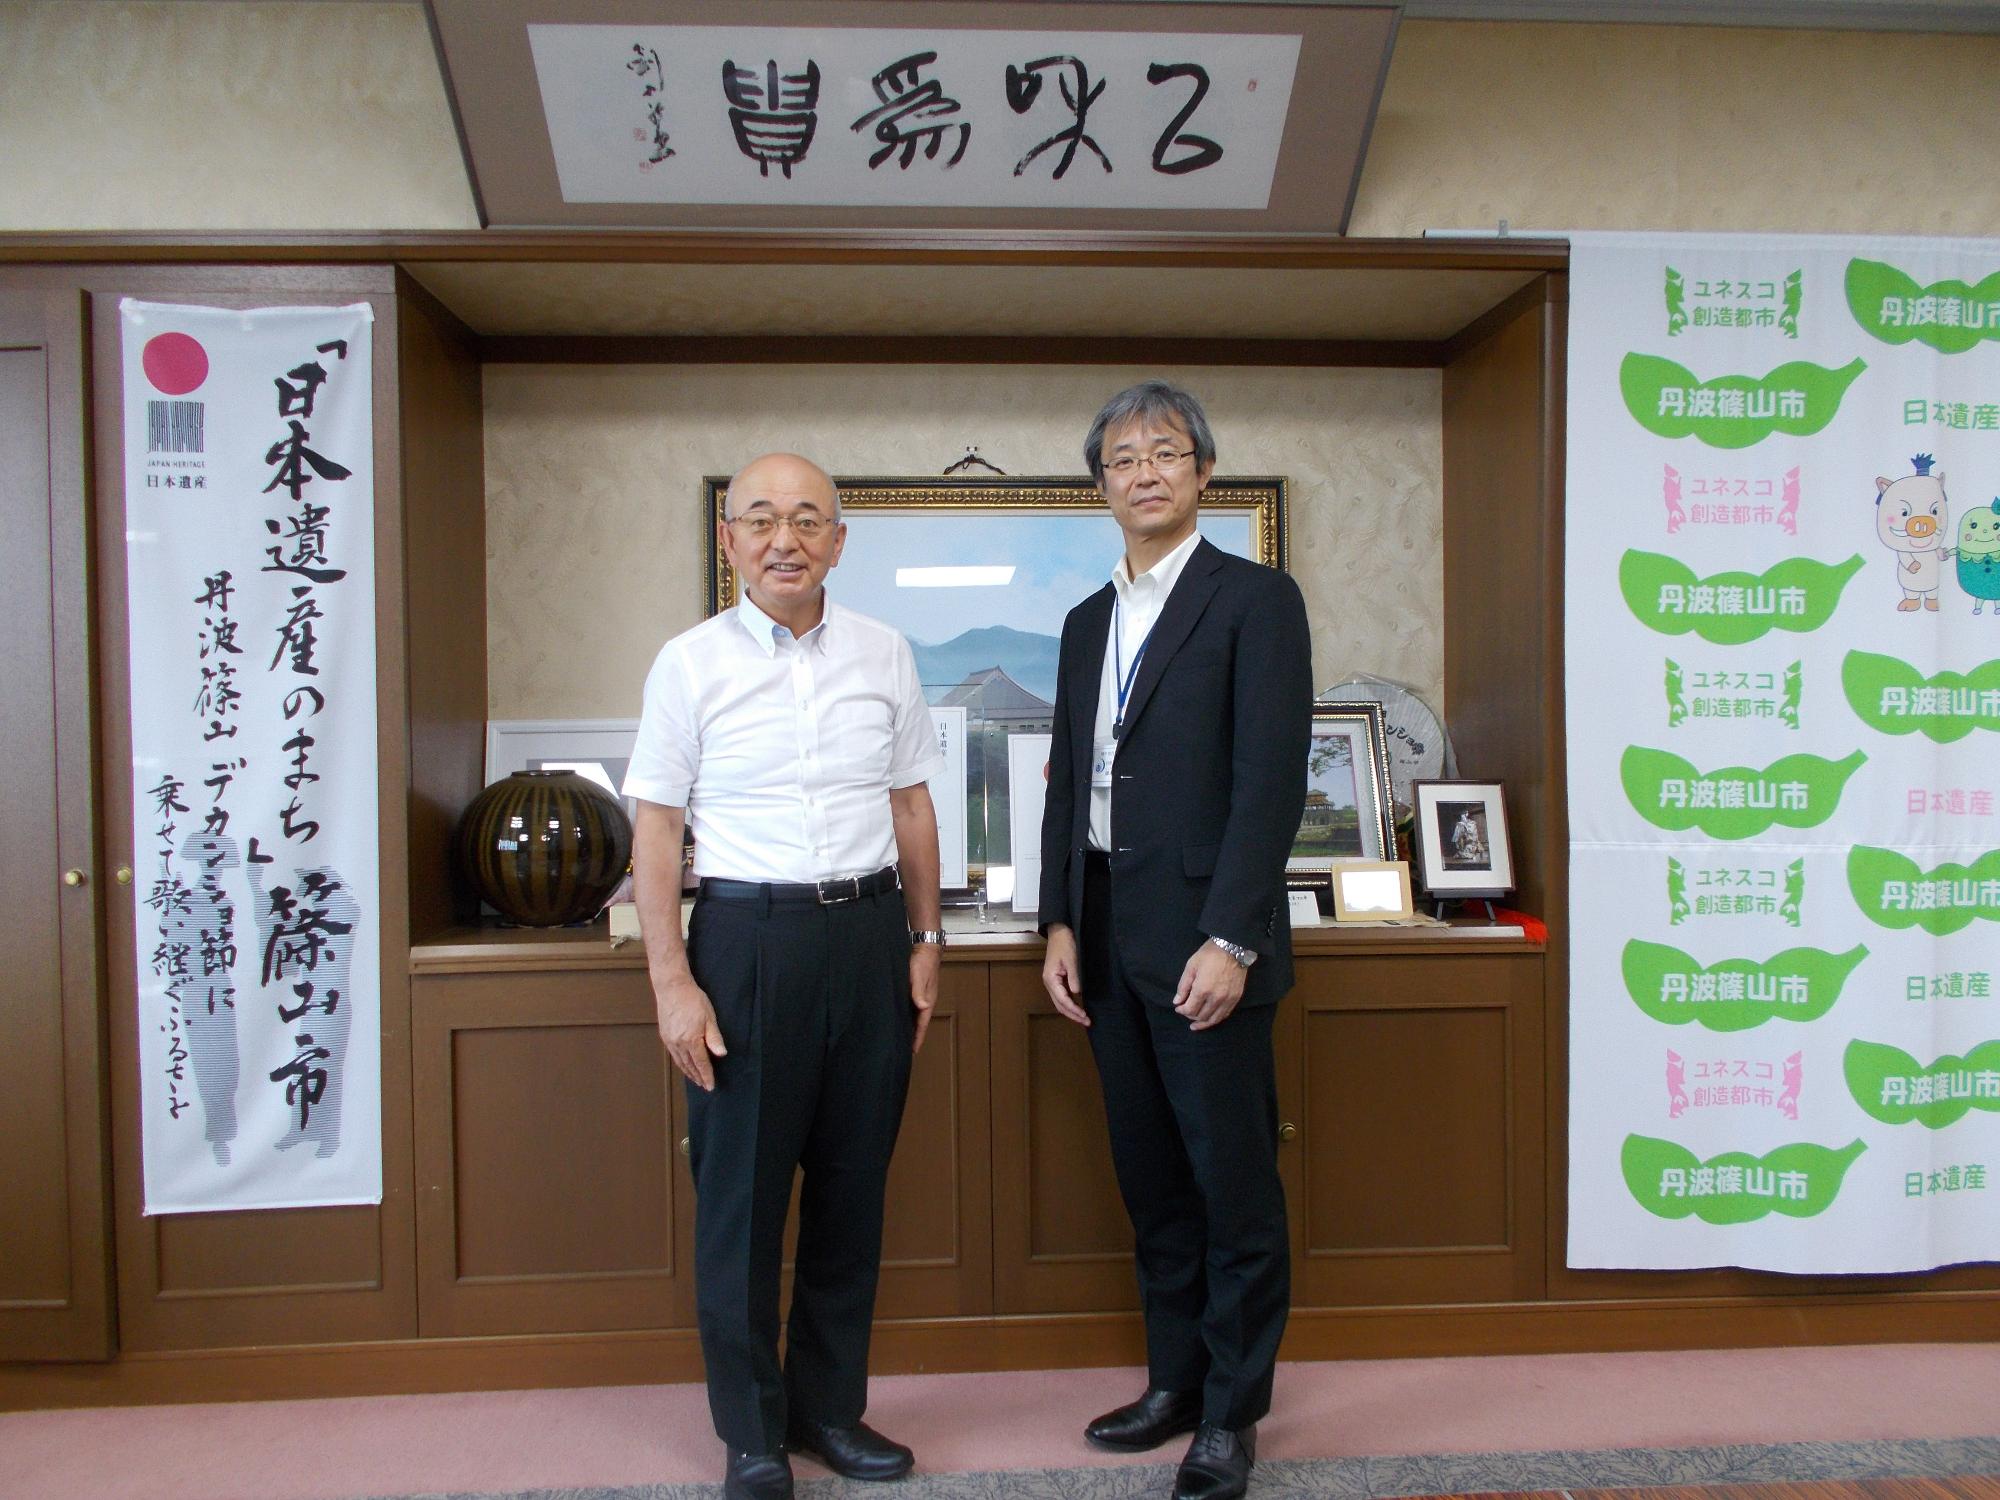 酒井市長と藤本台長の写真